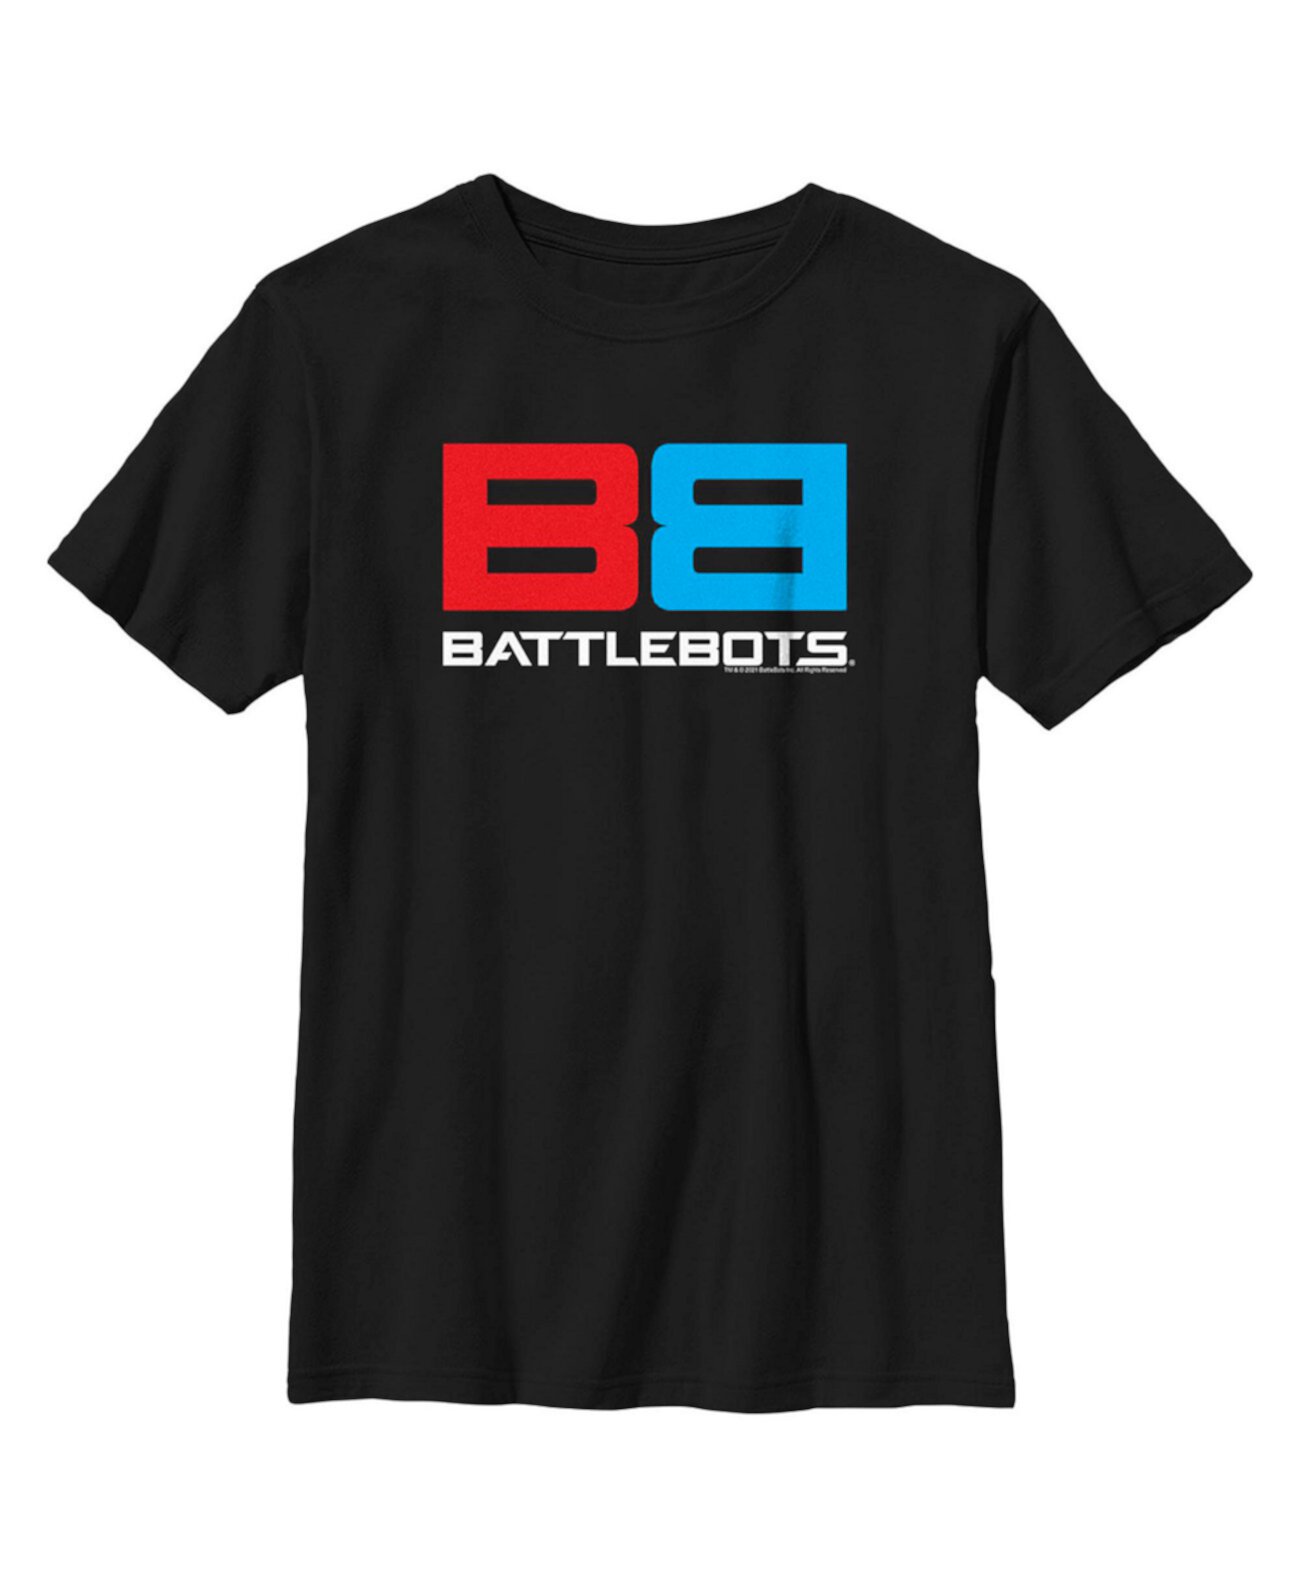 Детская футболка с красно-синим логотипом для мальчика Battlebots